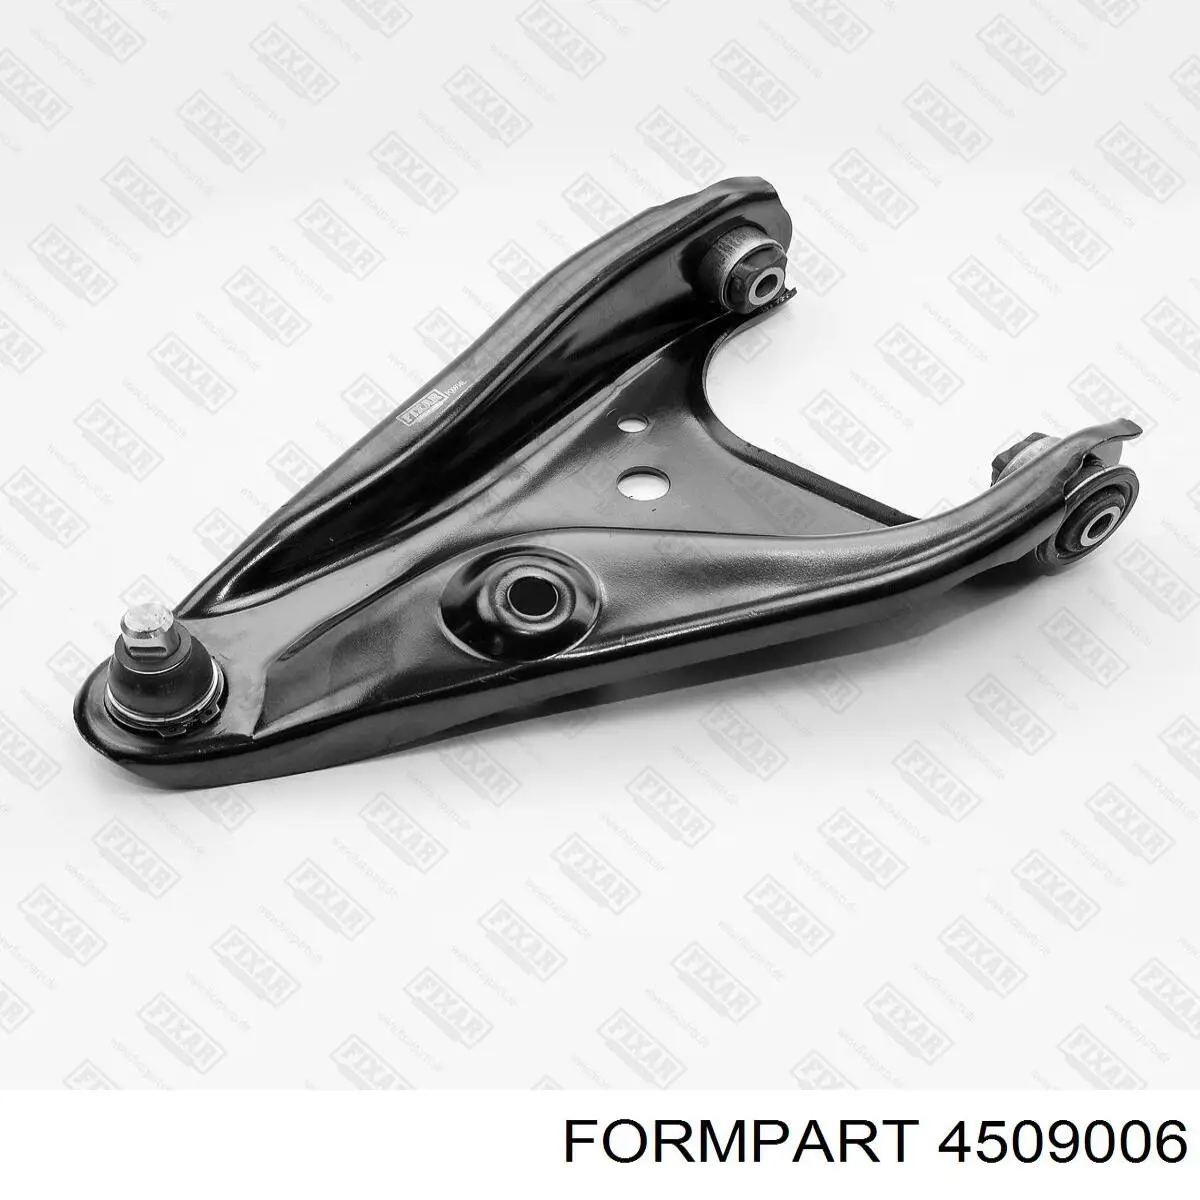 4509006 Formpart/Otoform barra oscilante, suspensión de ruedas delantera, inferior izquierda